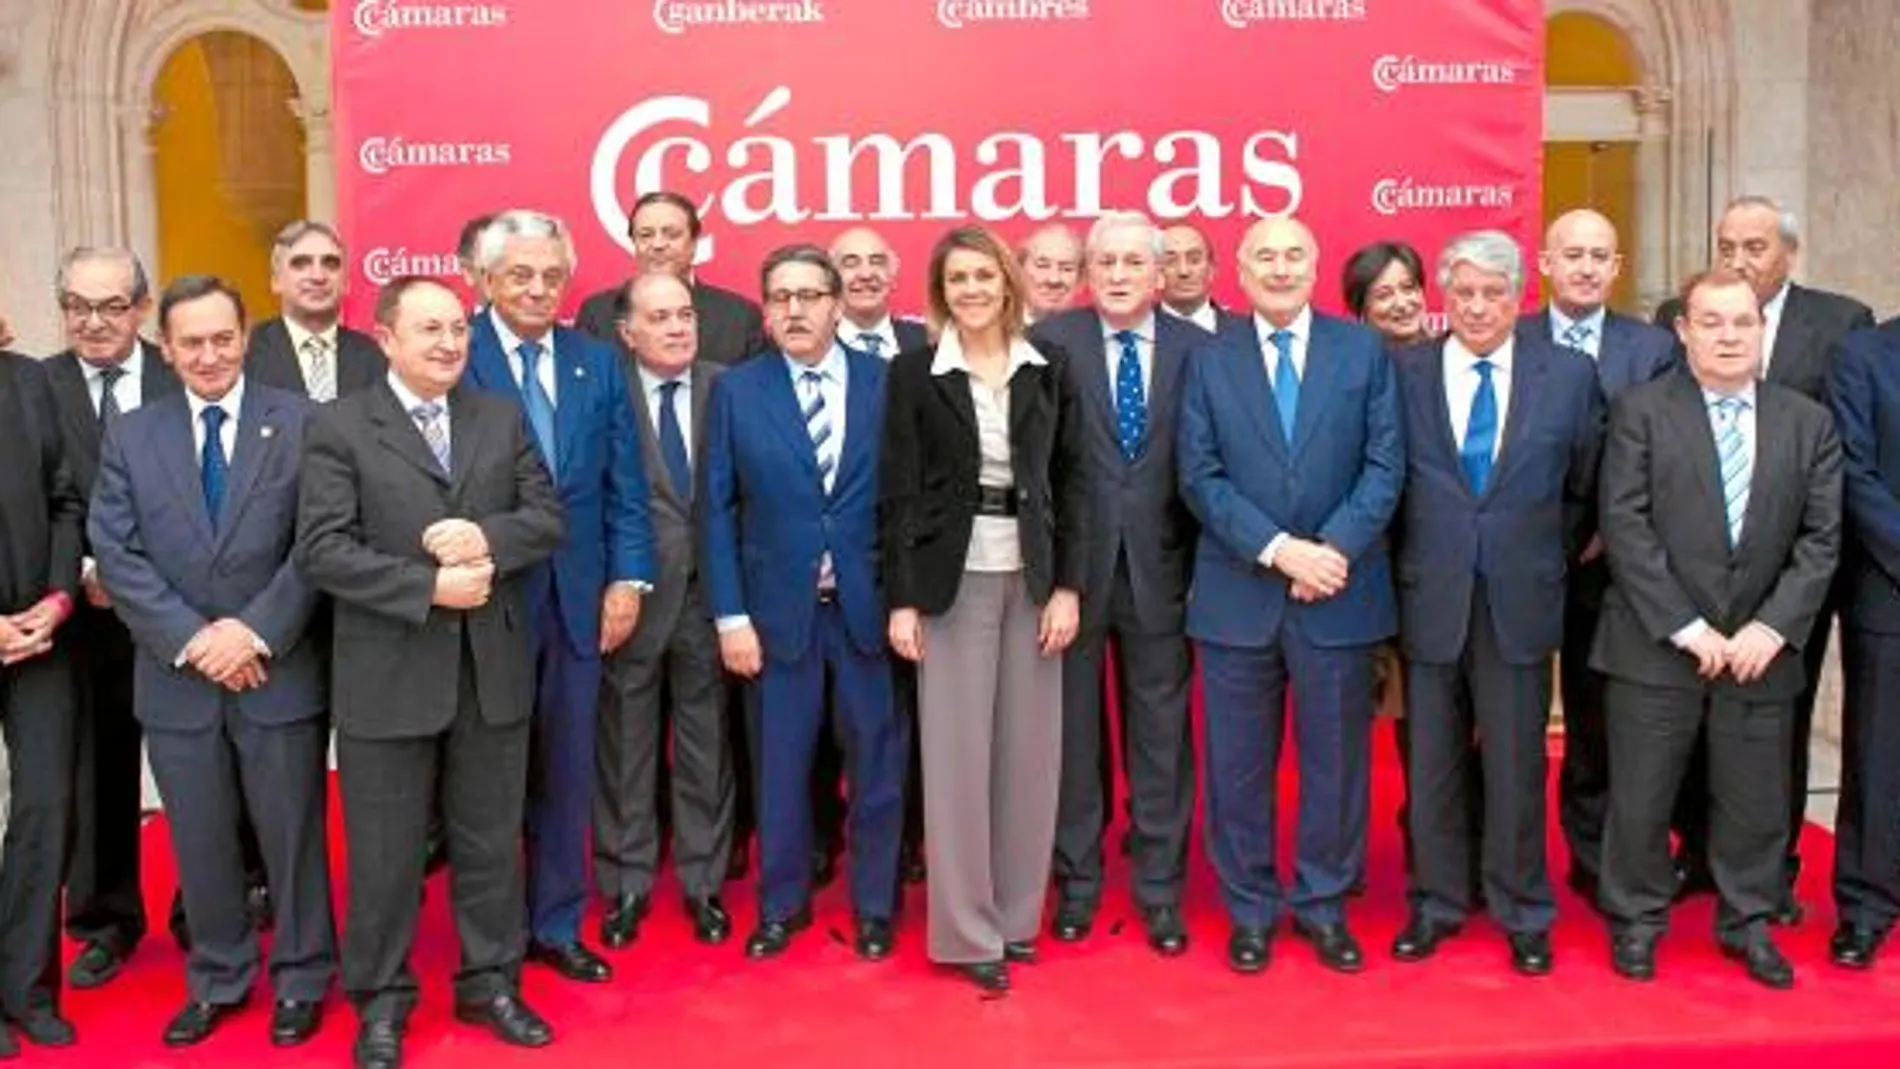 Cospedal y Méndez Pozo junto con los presidentes de Cámaras de la Región y de otras provincias españolas